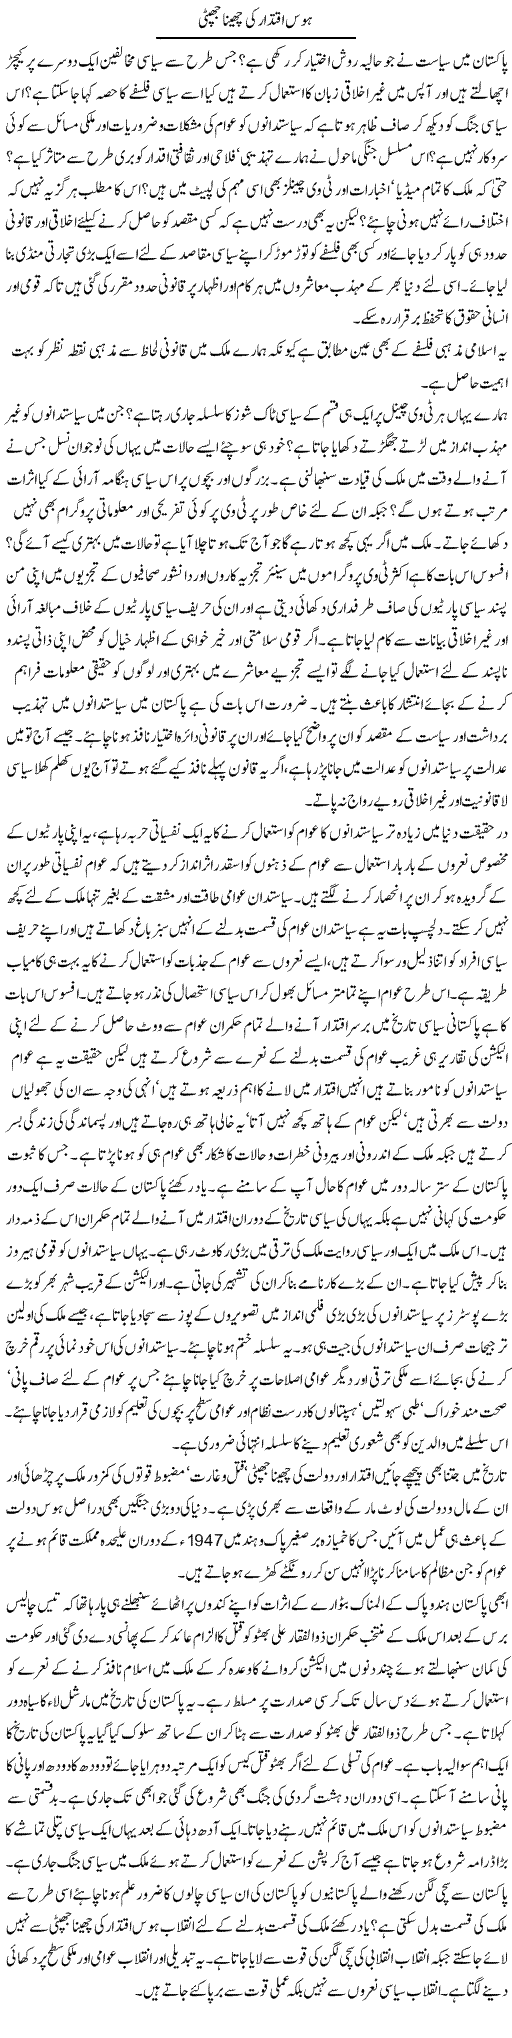 Hawas Iqtidar Ki Jhapta Jhapti | Tasneem Peer Zada | Daily Urdu Columns